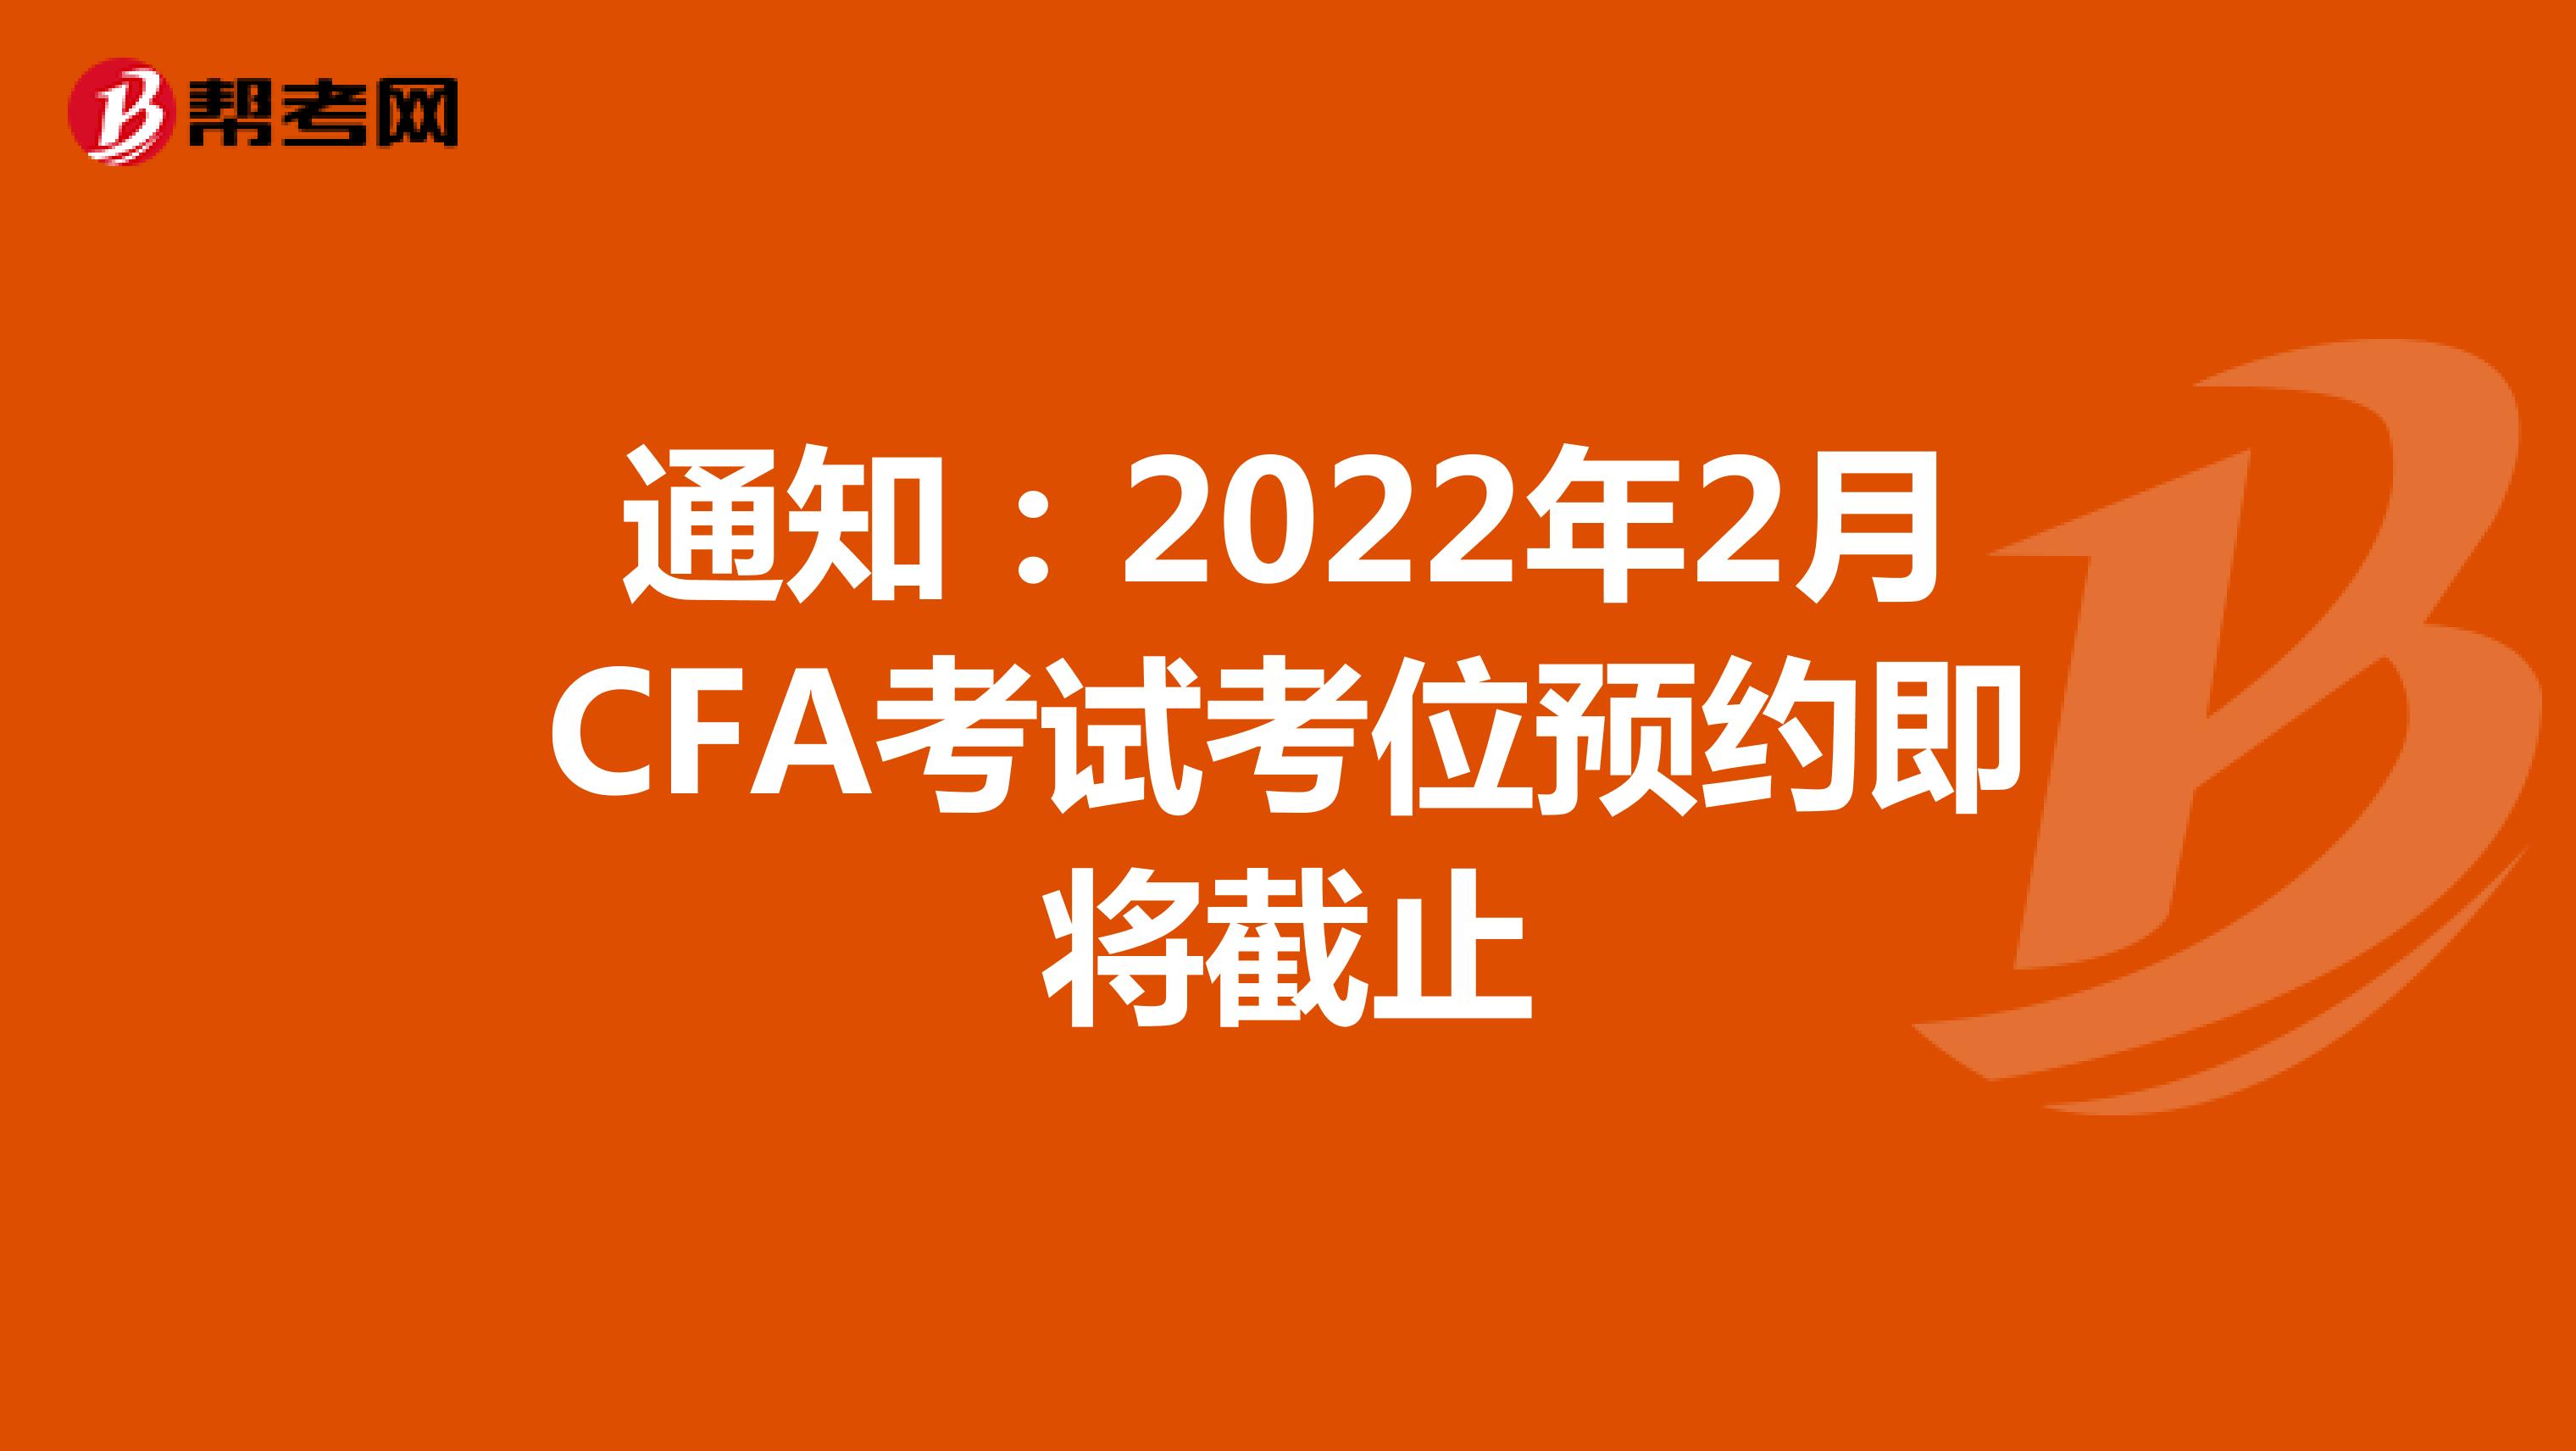 通知：2022年2月CFA考试考位预约即将截止